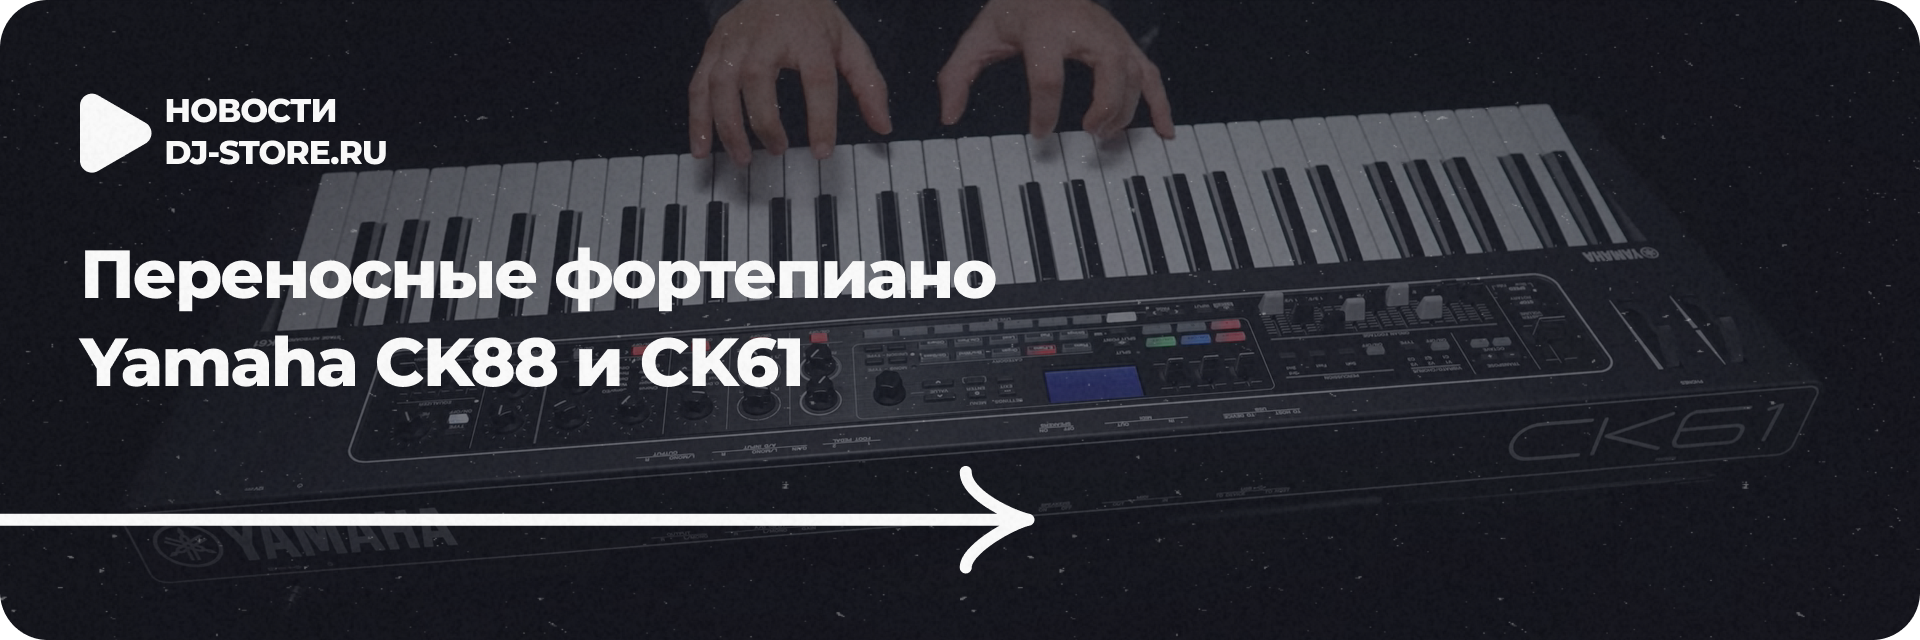 Переносные фортепиано Yamaha CK88 и CK61